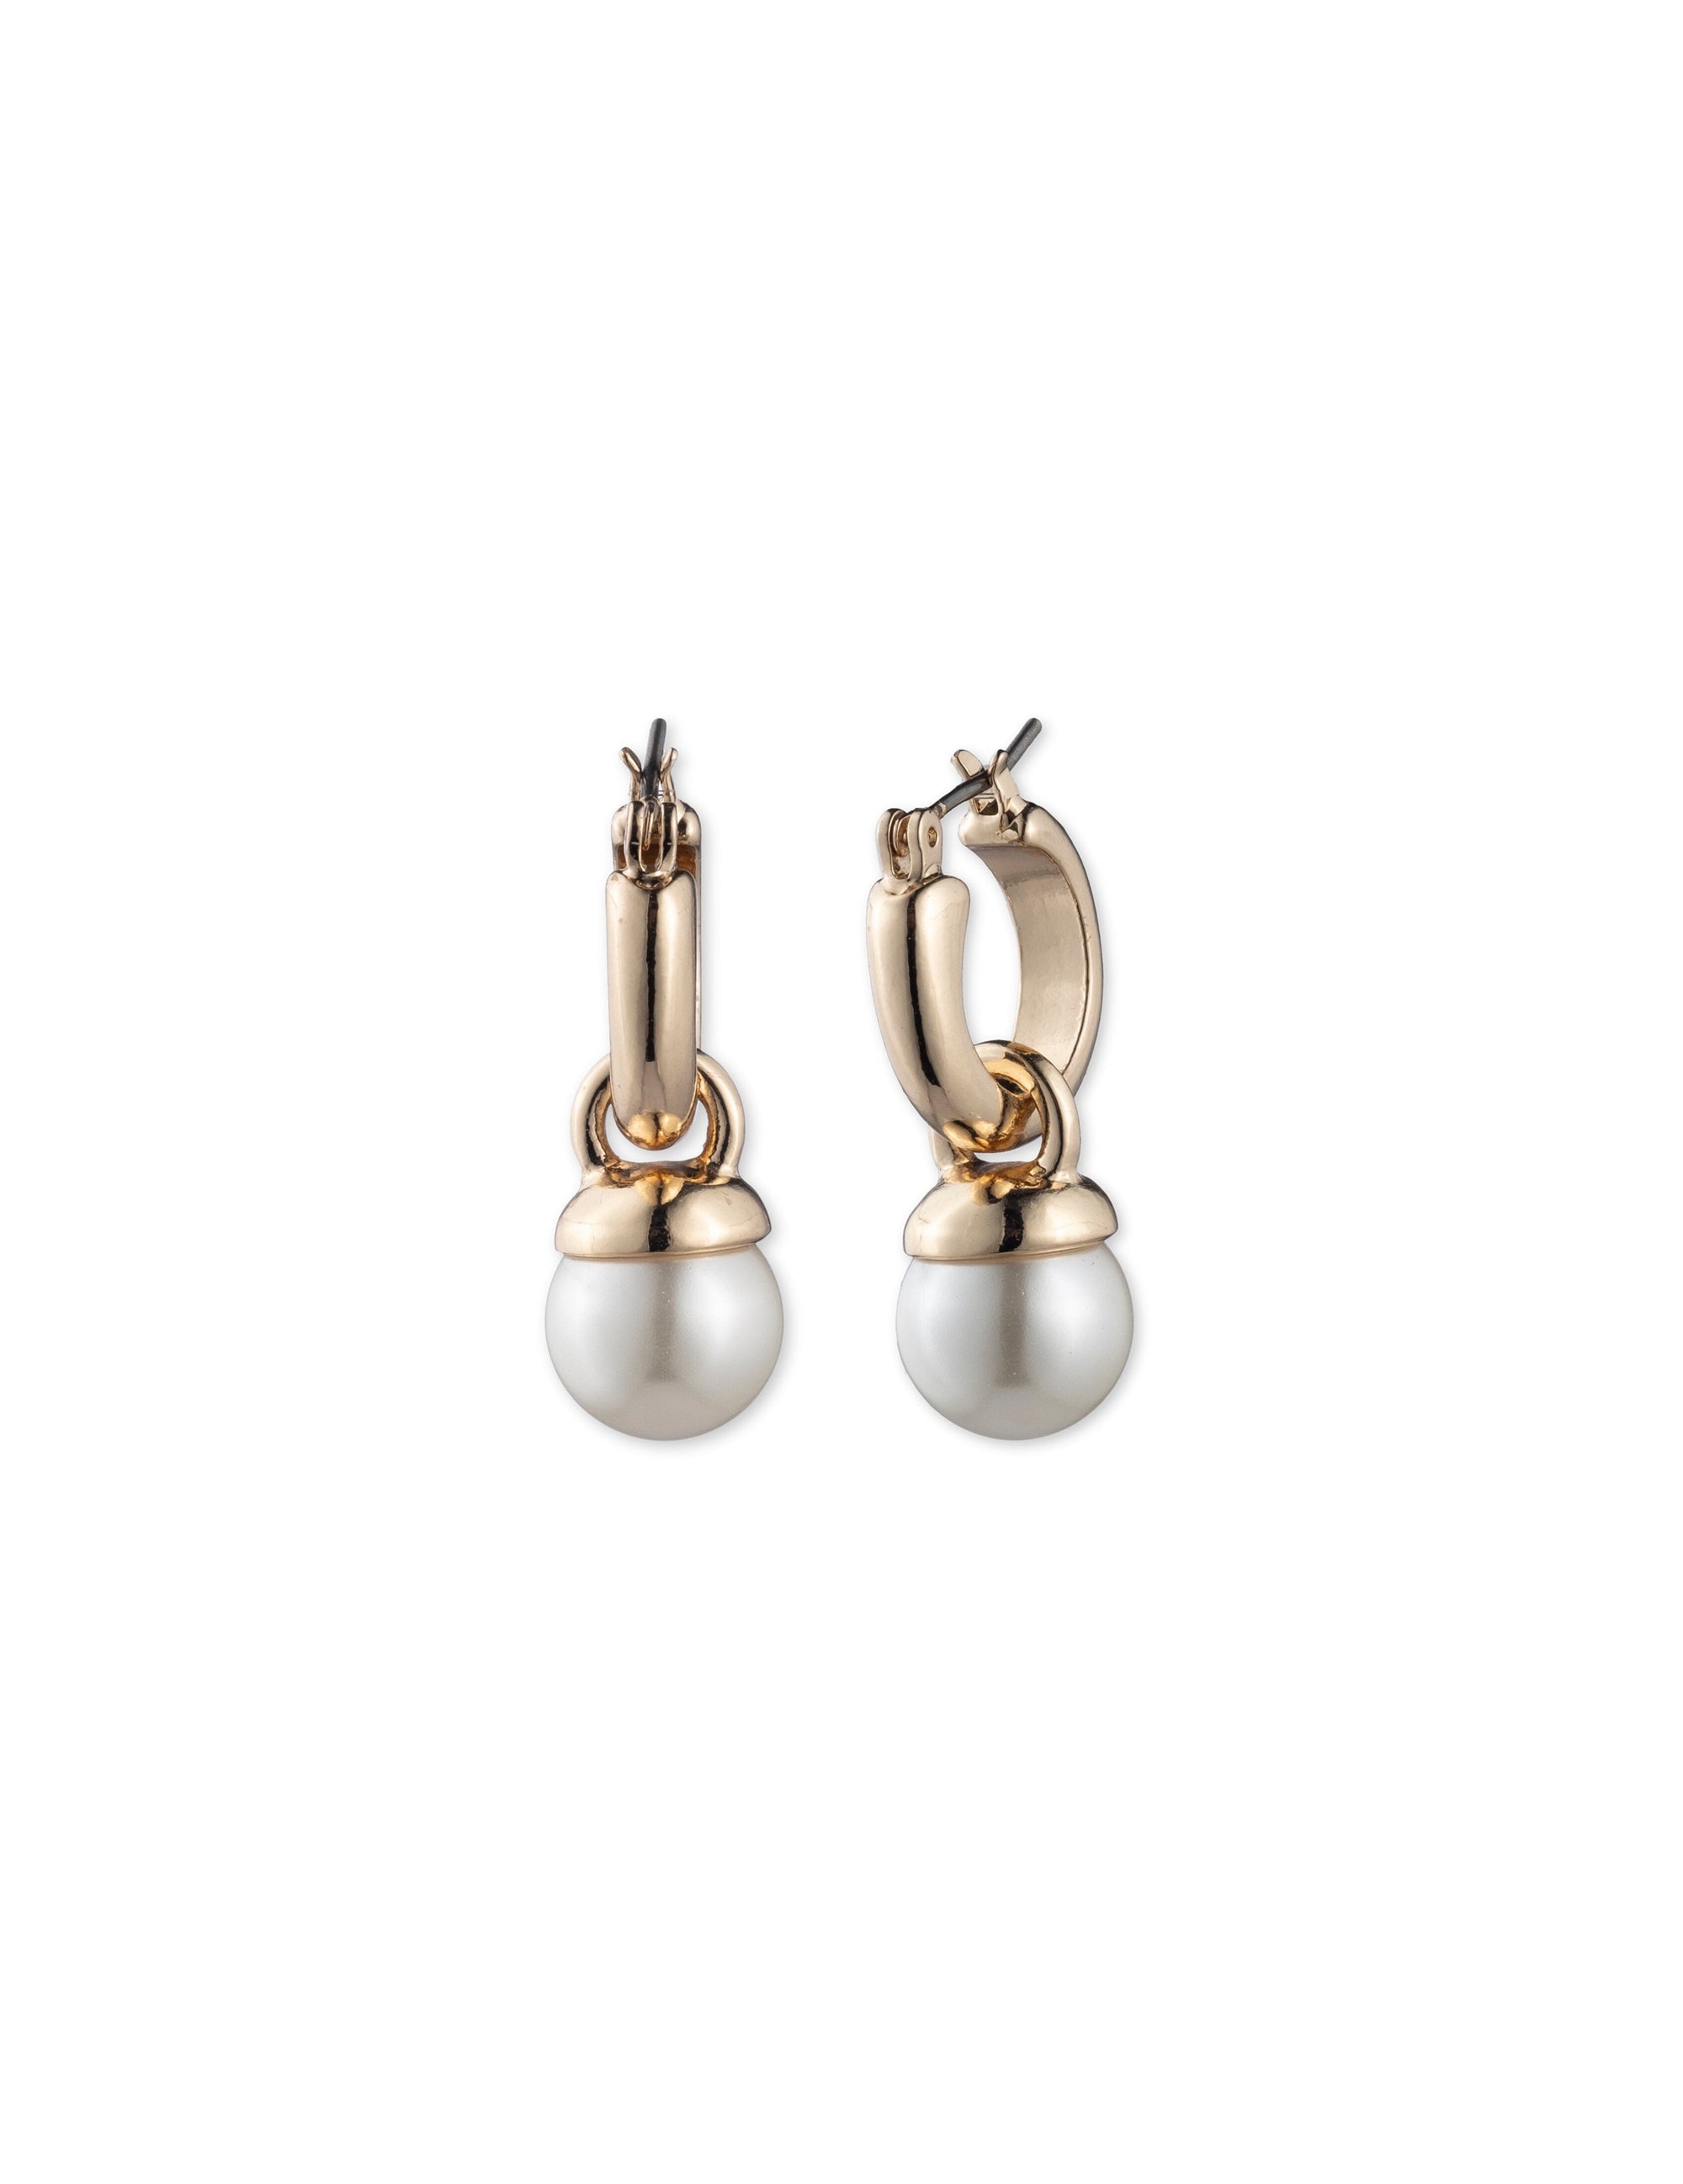 Hollow Water Drop Earrings Smooth Stainless Steel Women Long Ear Hook | eBay